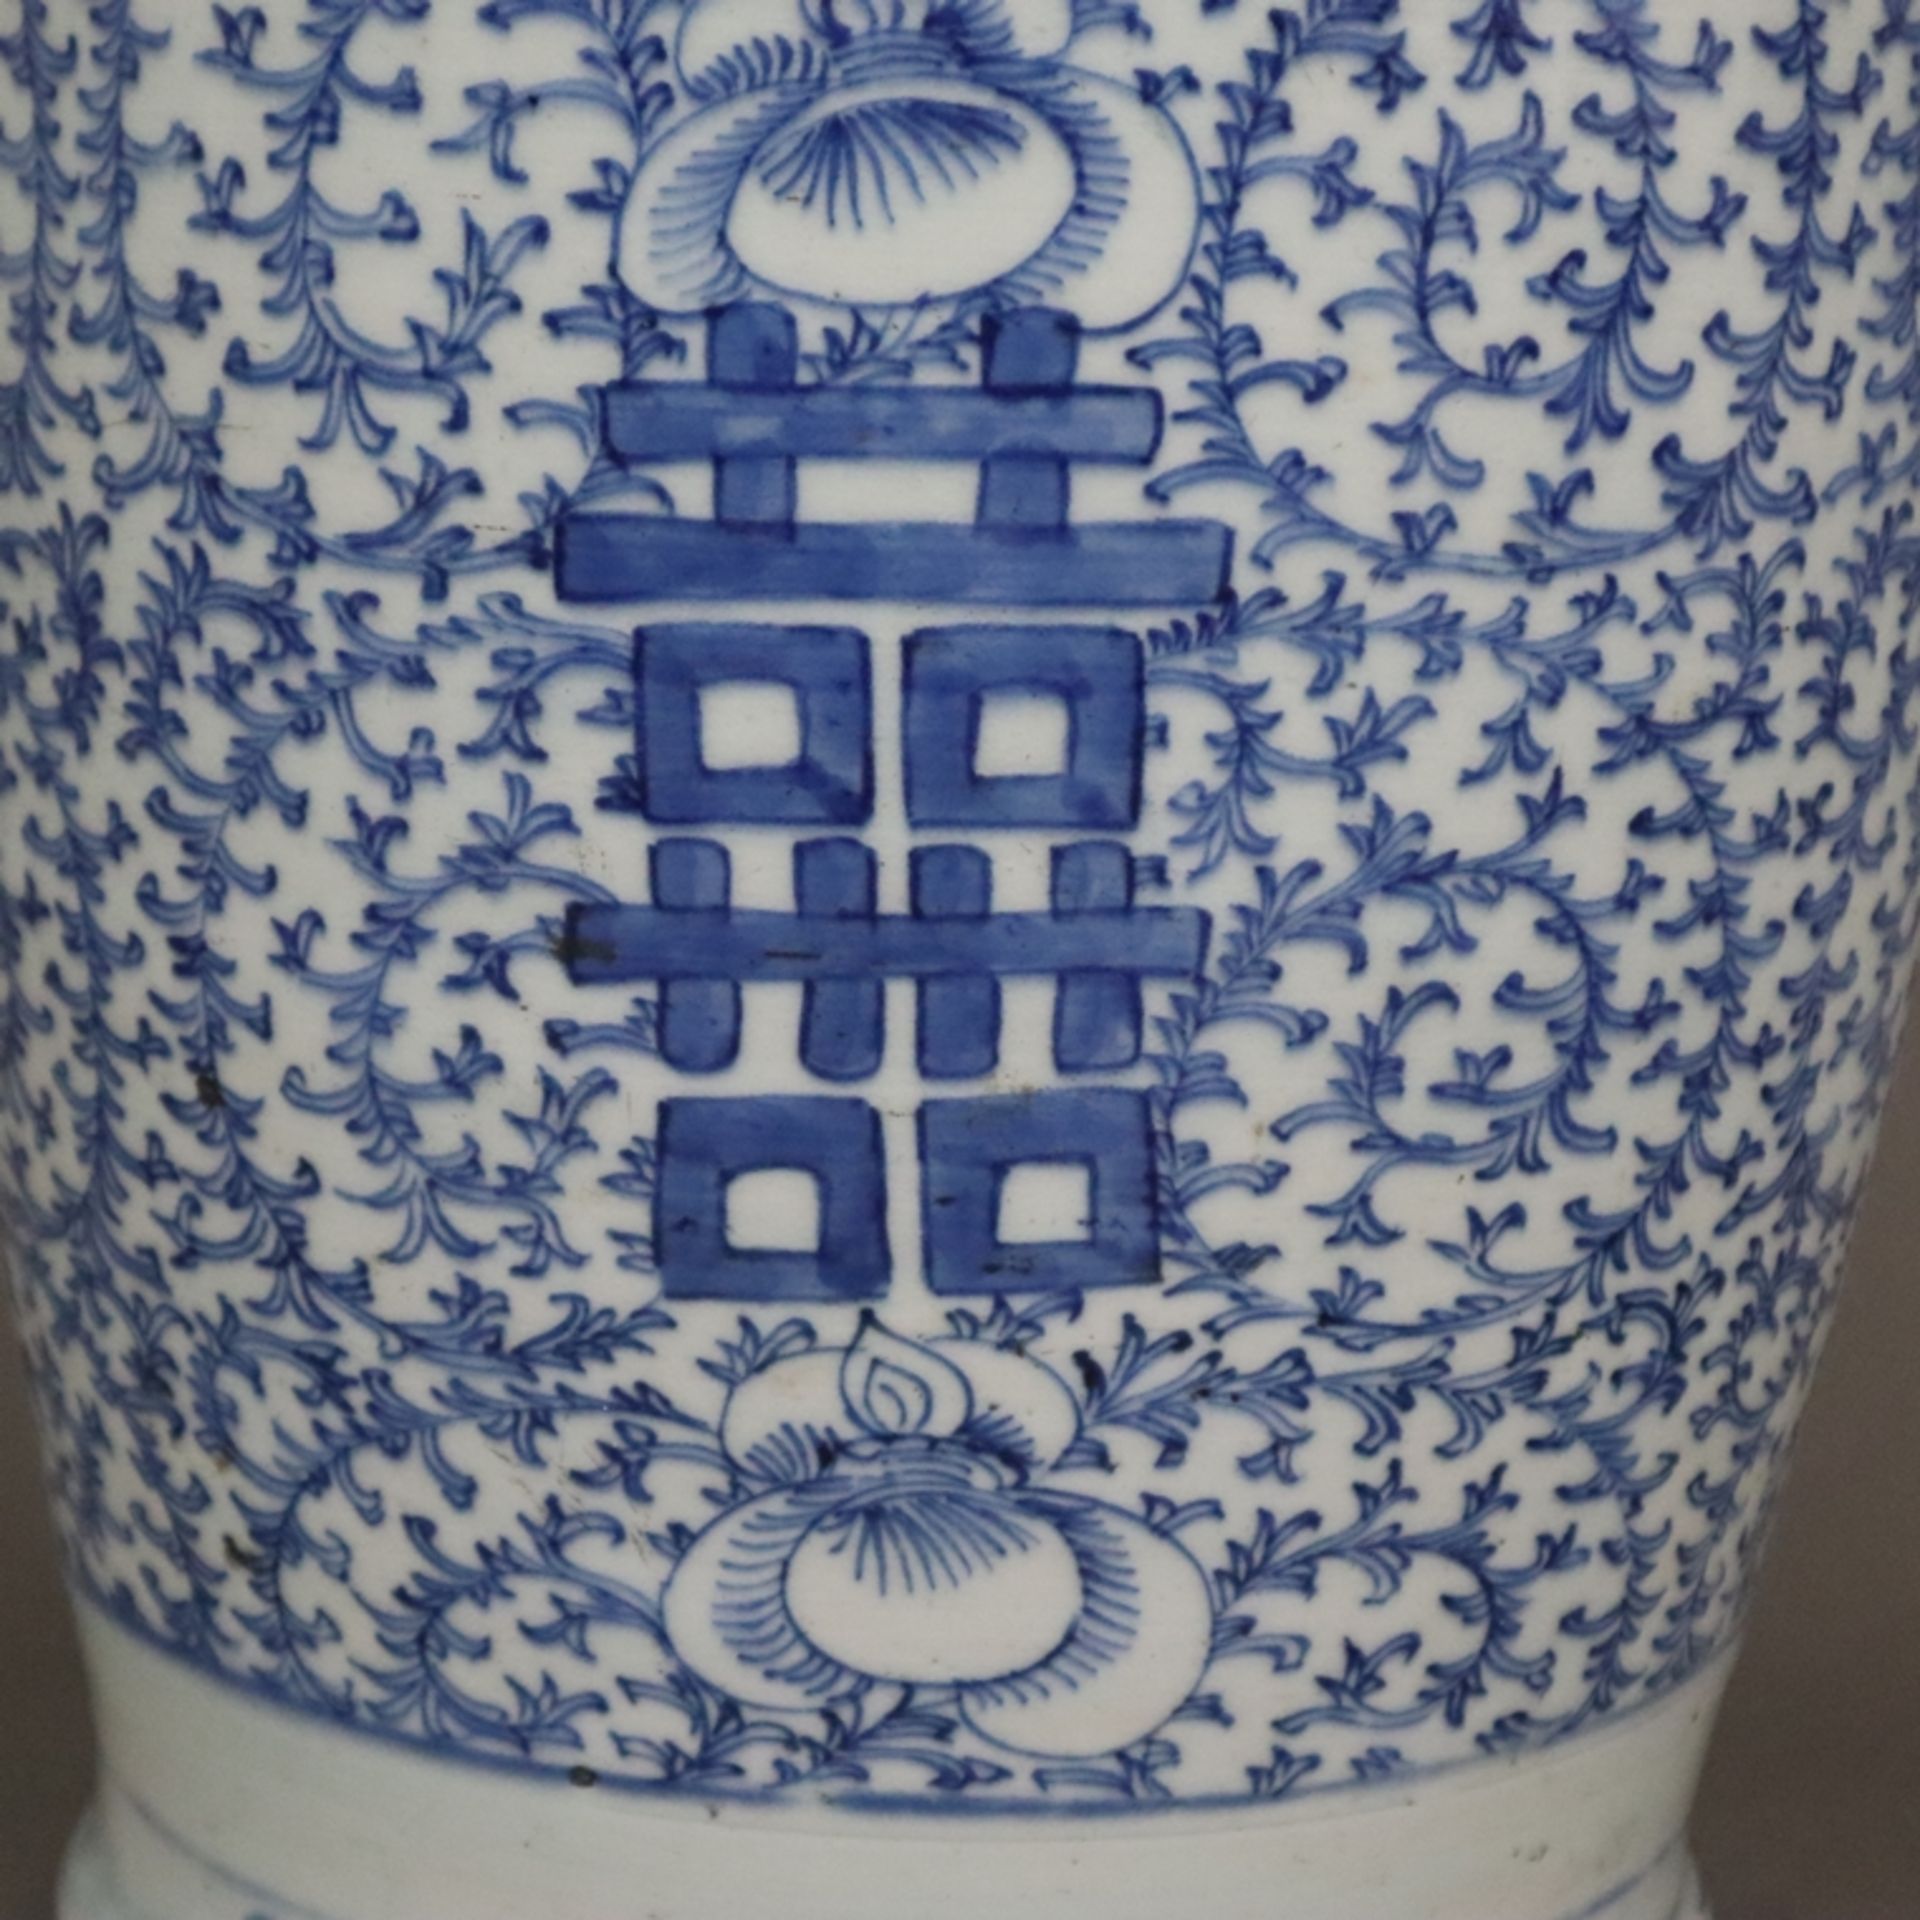 Blau-weiße Bodenvase - China, späte Qing-Dynastie, Tongzhi 1862-1875, sog. „Hochzeitsvase“, auf der - Bild 6 aus 14